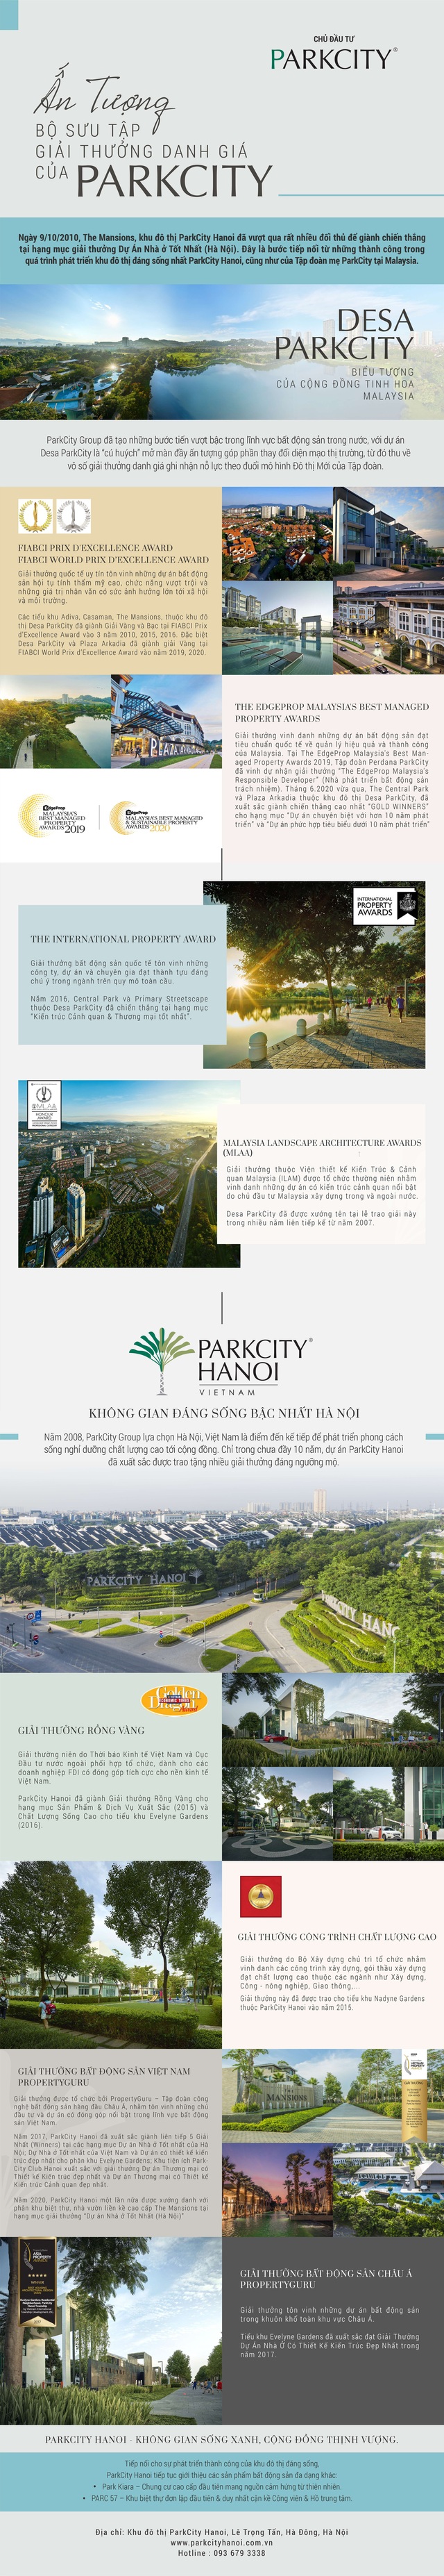 Ấn tượng bộ sưu tập giải thưởng danh giá của ParkCity - Ảnh 1.